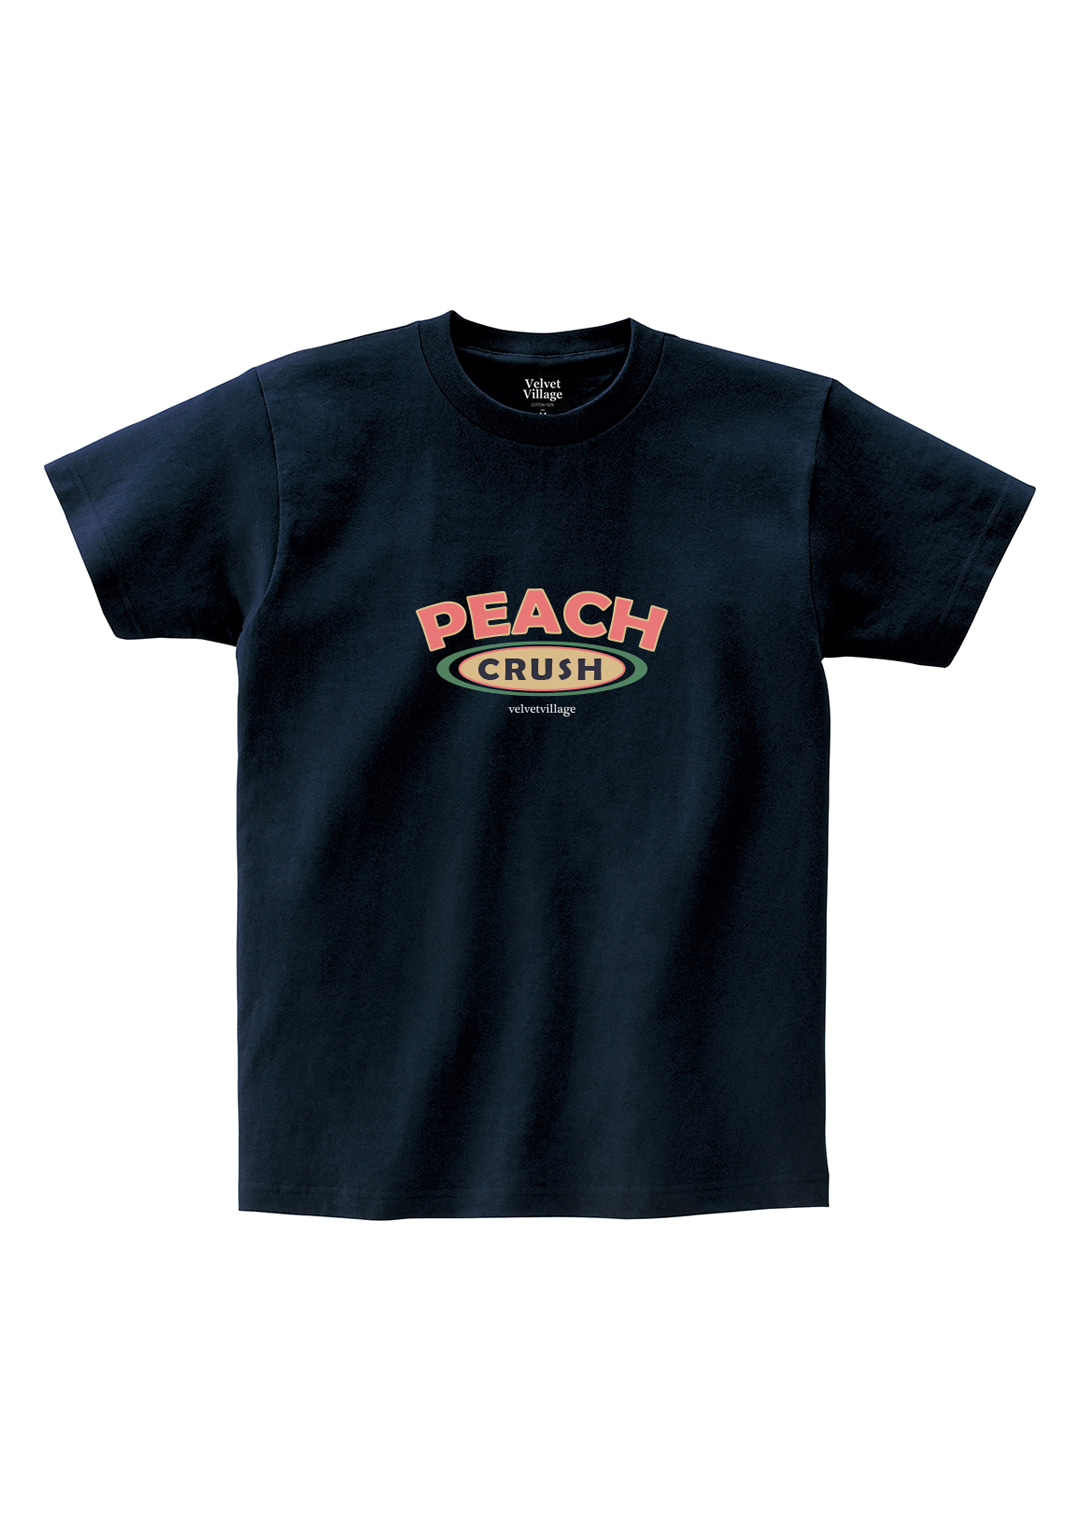 Peachcrush T-shirts (Navy)